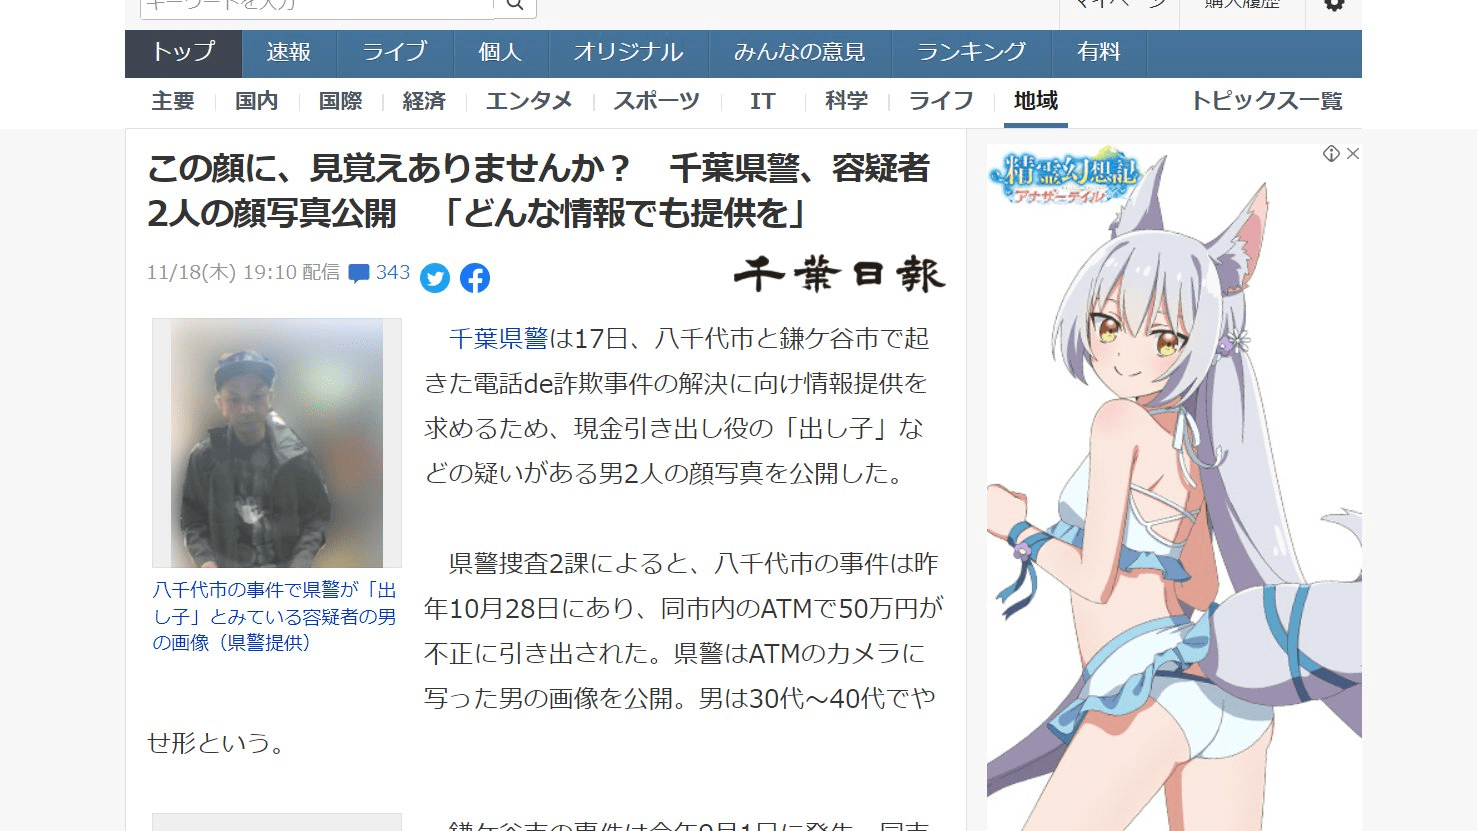 Un japonés se quejó de encontrar 'publicidad atrevida' en sitios de noticias